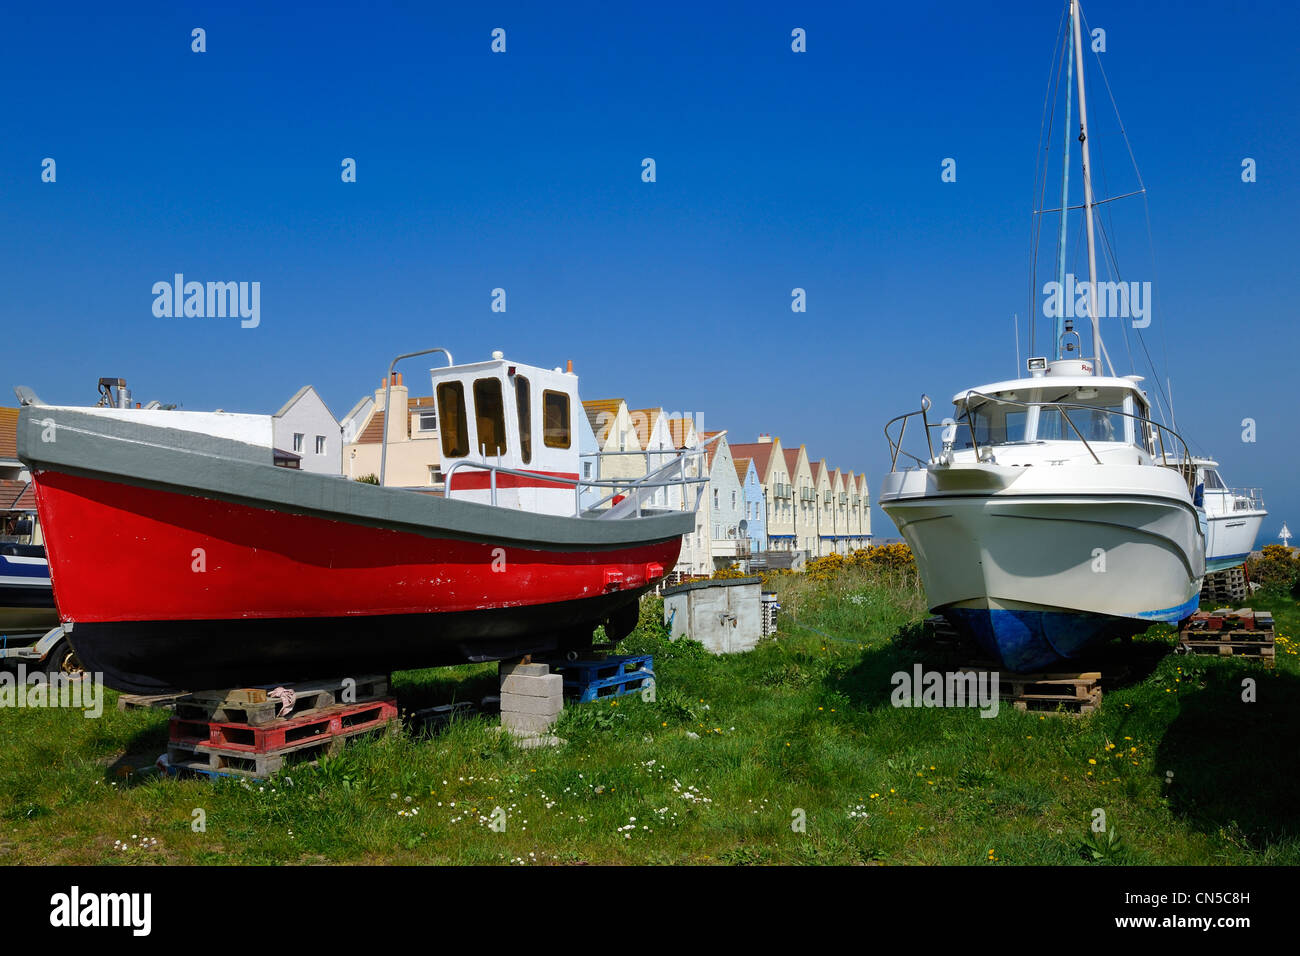 Casa asciutta della barca immagini e fotografie stock ad alta risoluzione -  Alamy